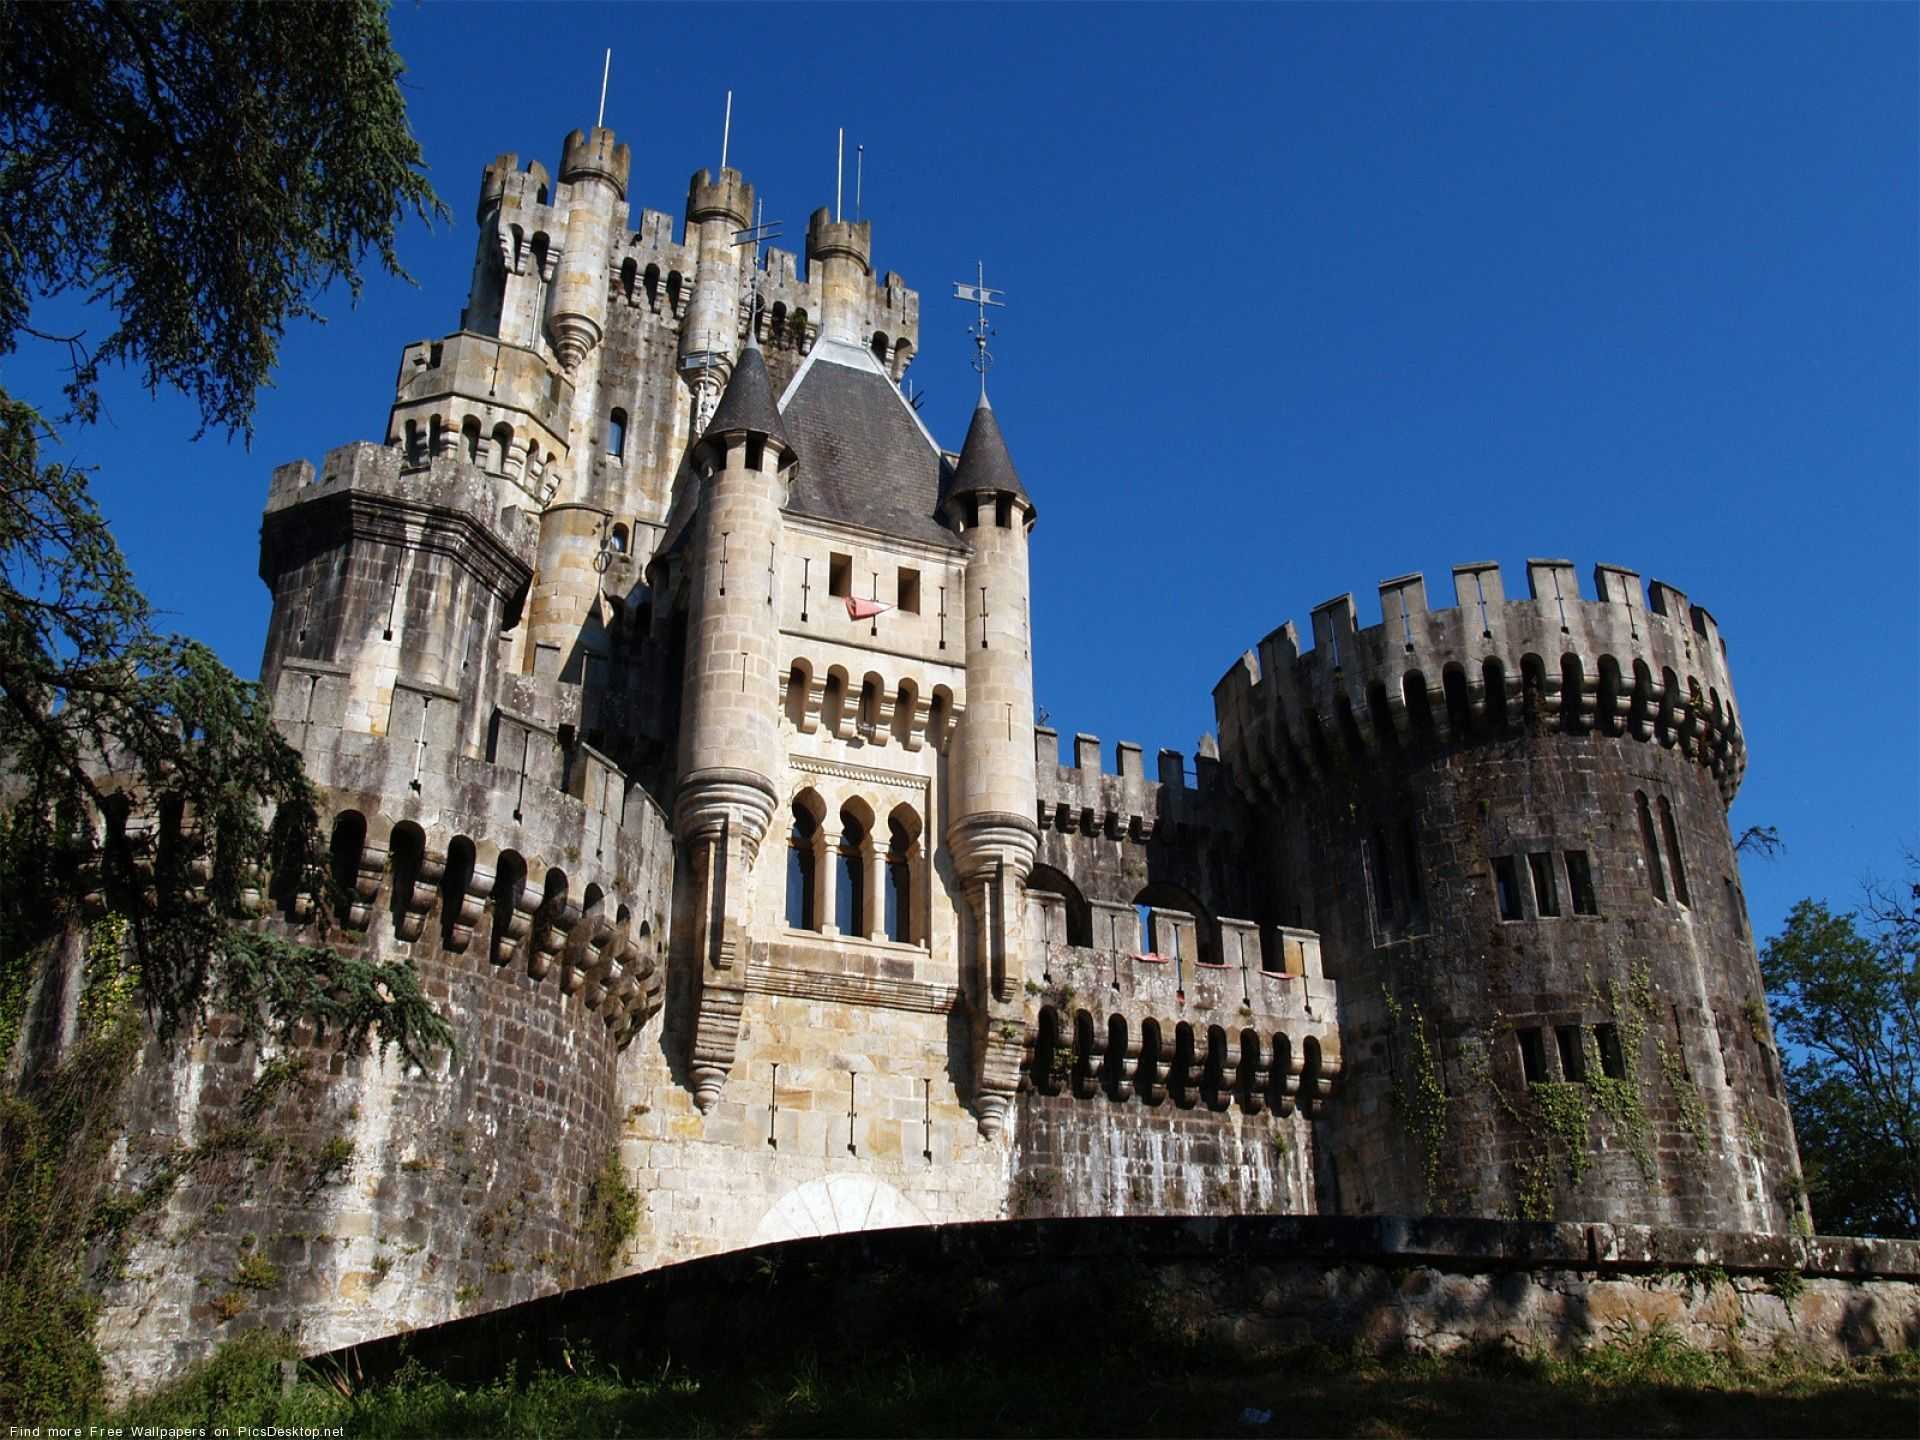 25 самых красивых замков в мире (70 фото) | krasota.ru